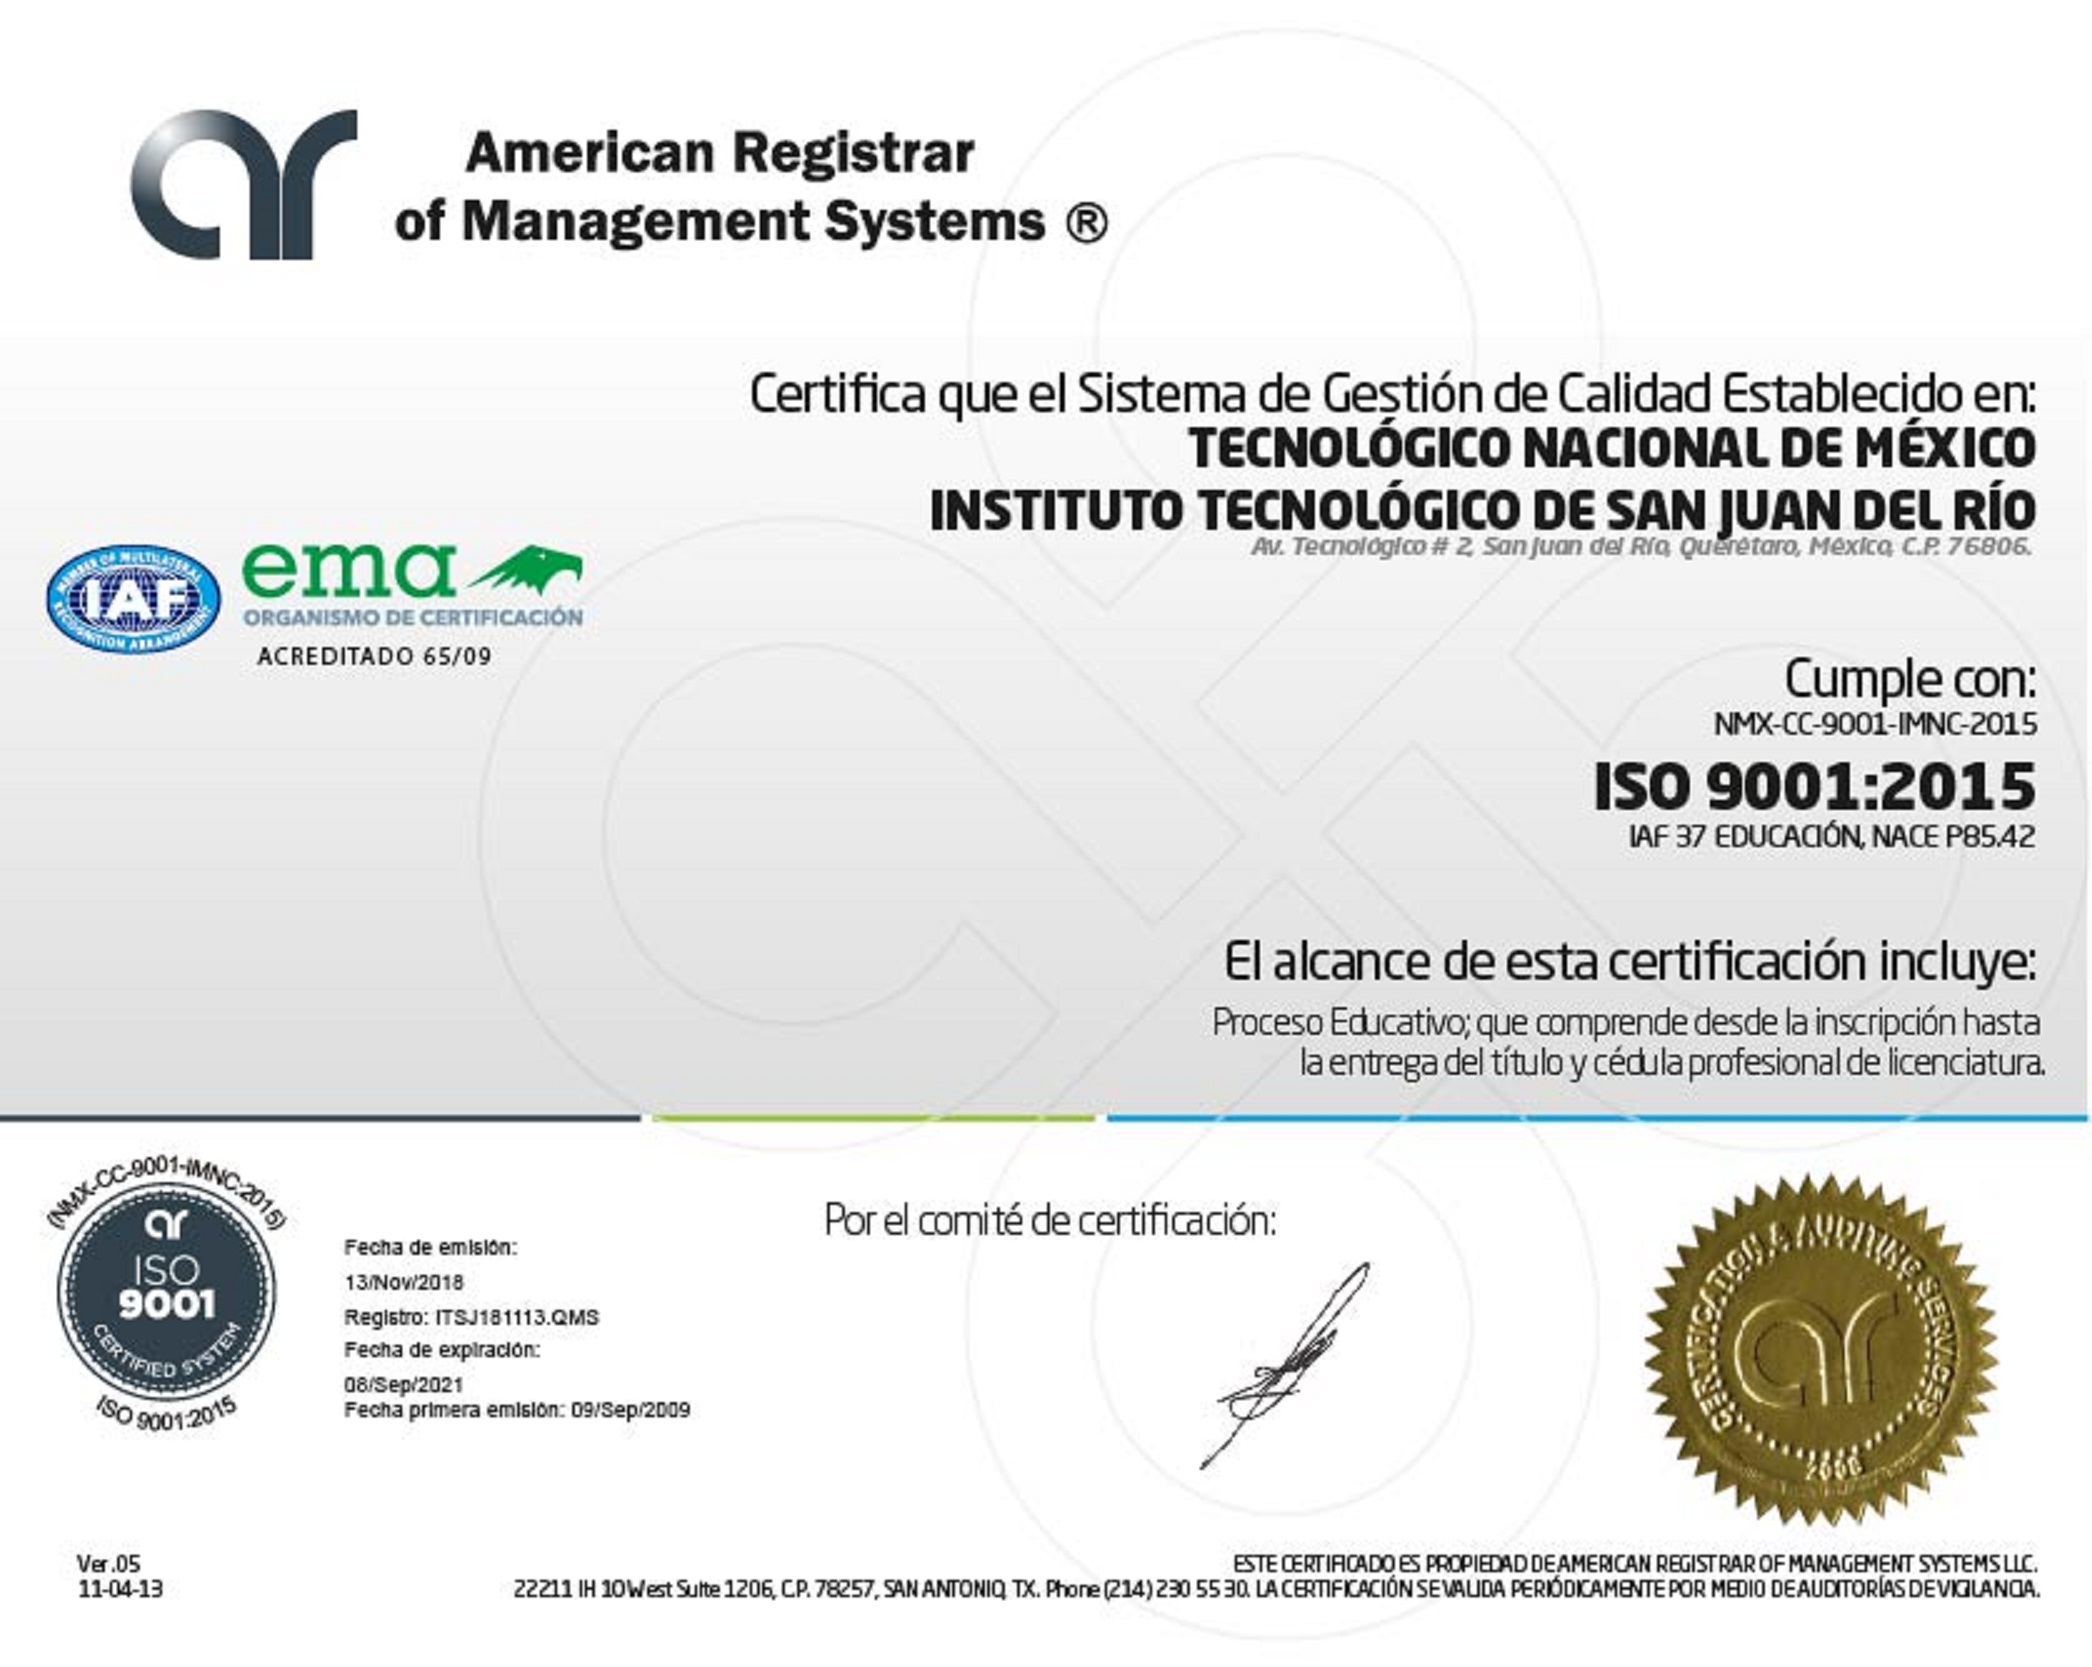 ARMS Certificado 01.4 SGC v 2015 ITSJ R0